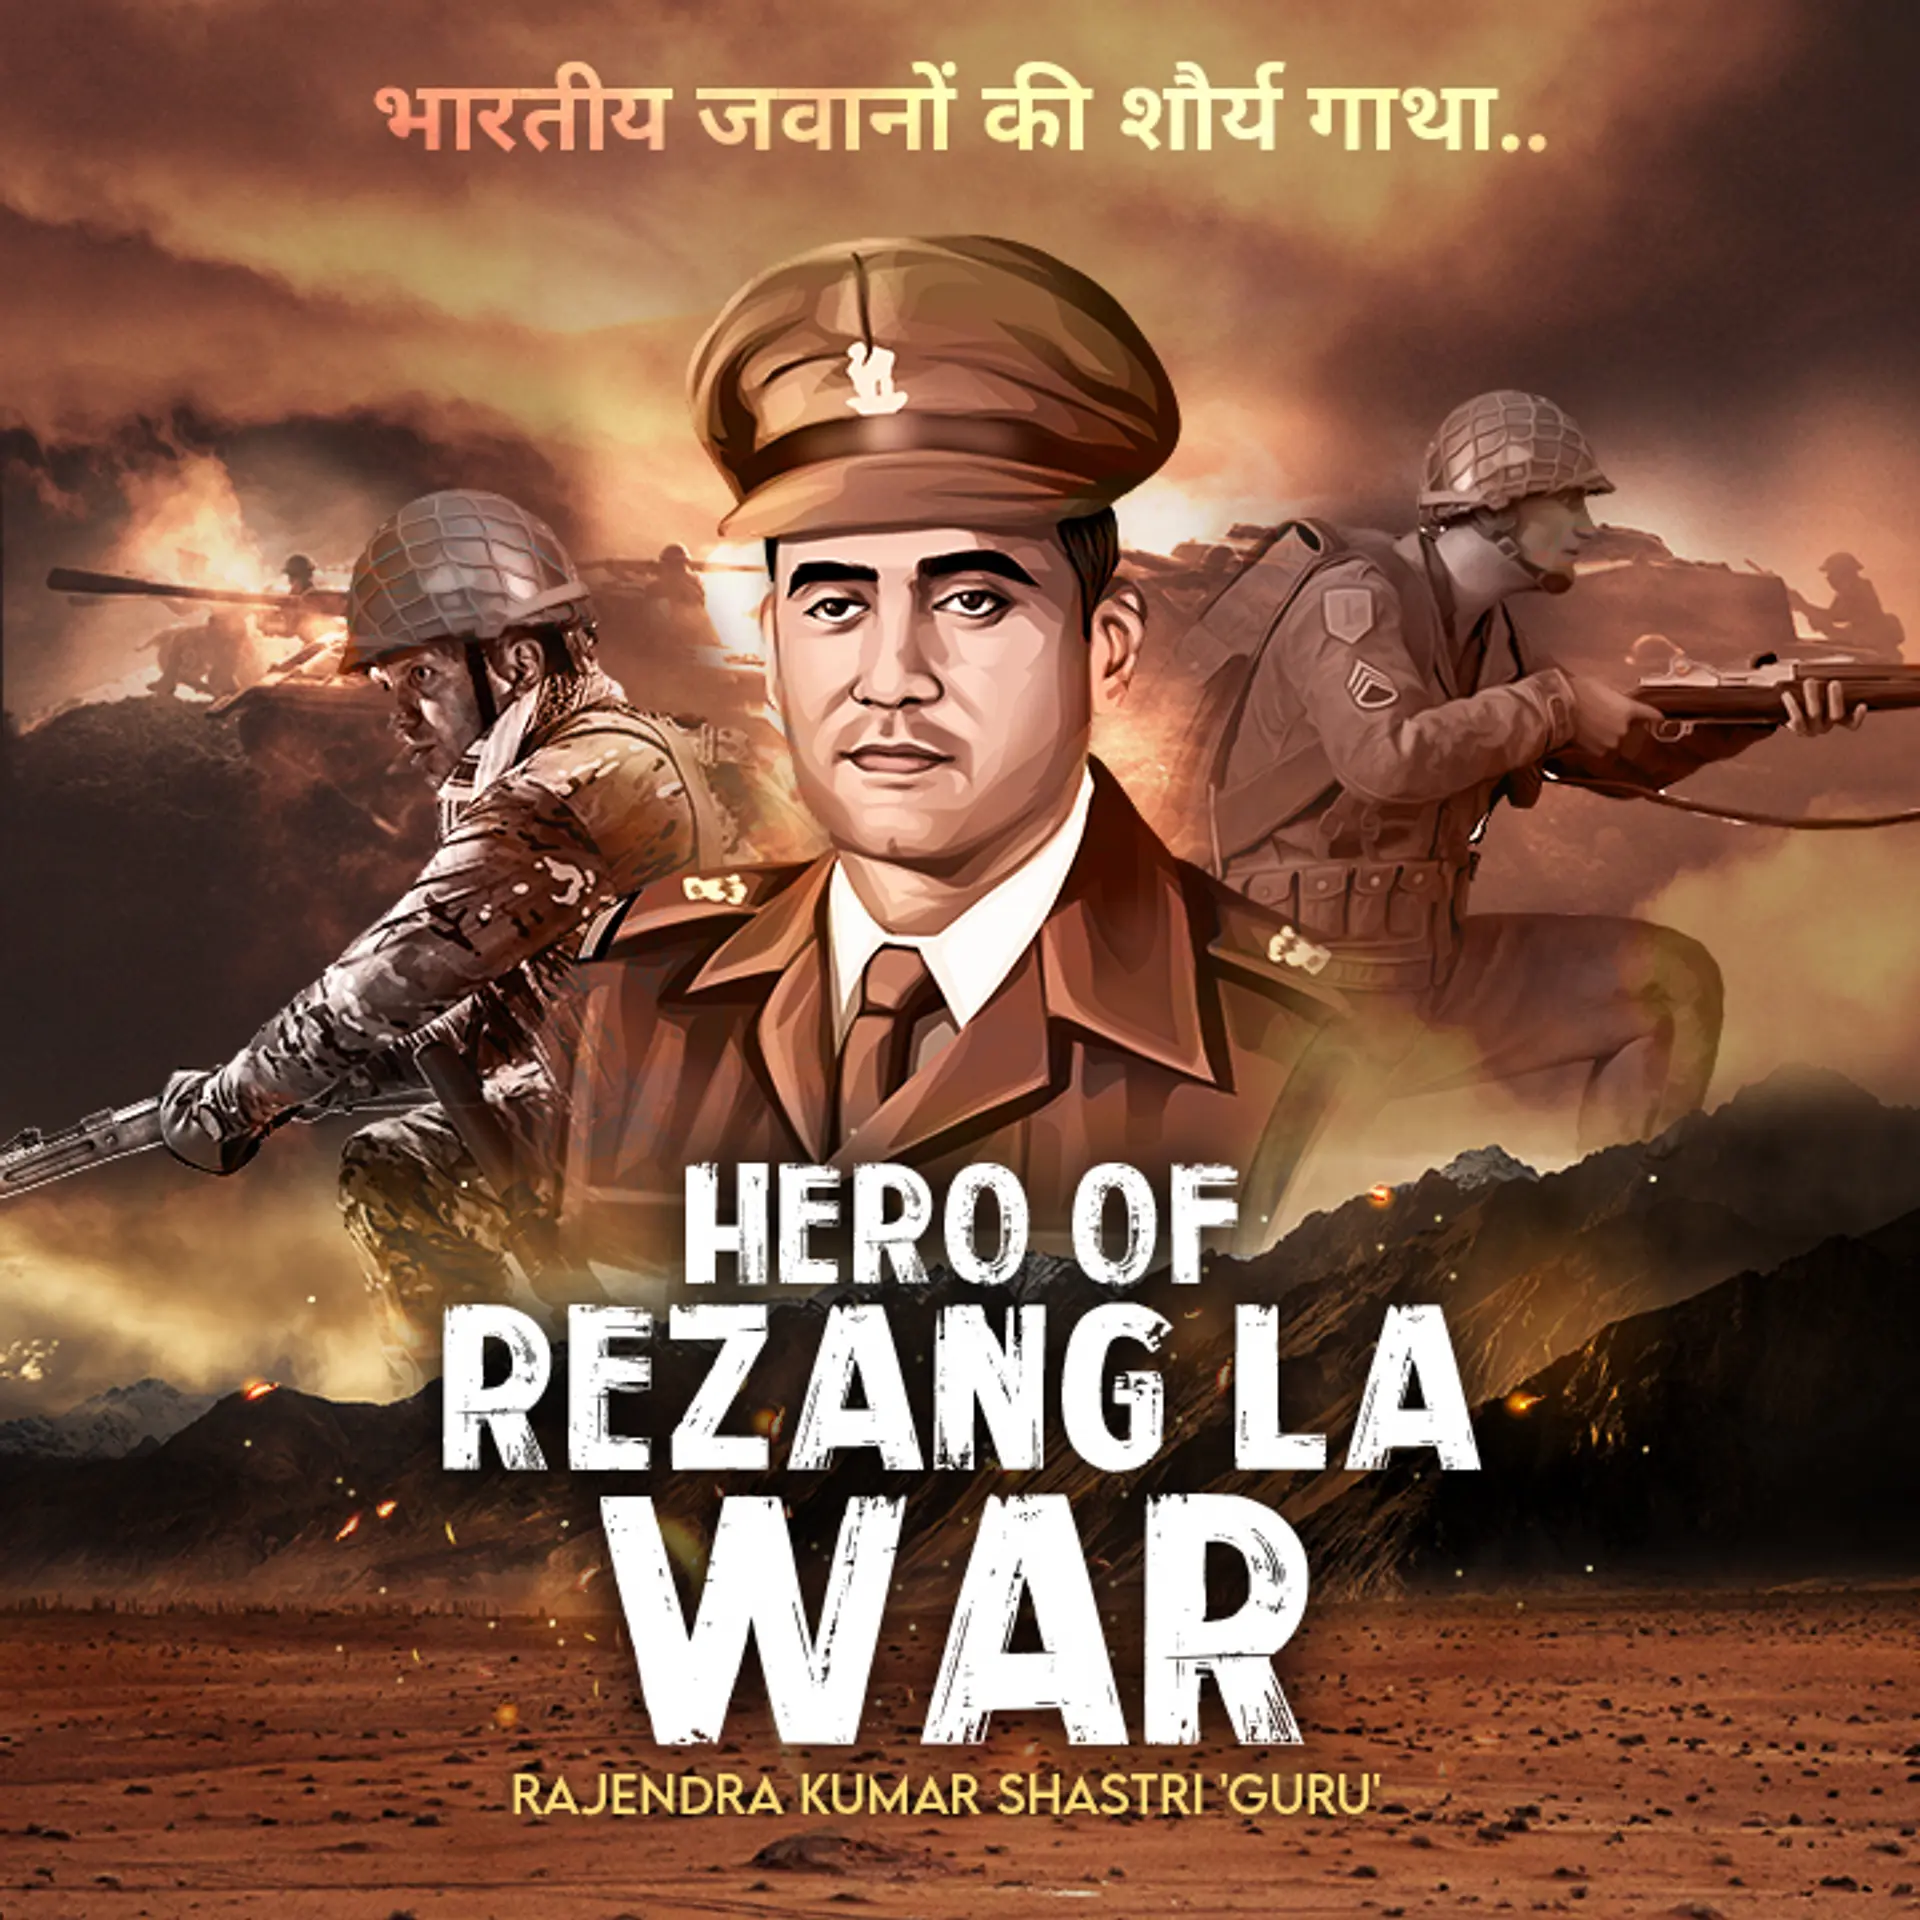 Hero Of Rezang La War "भारतीय जवानों की शौर्य गाथा" | 